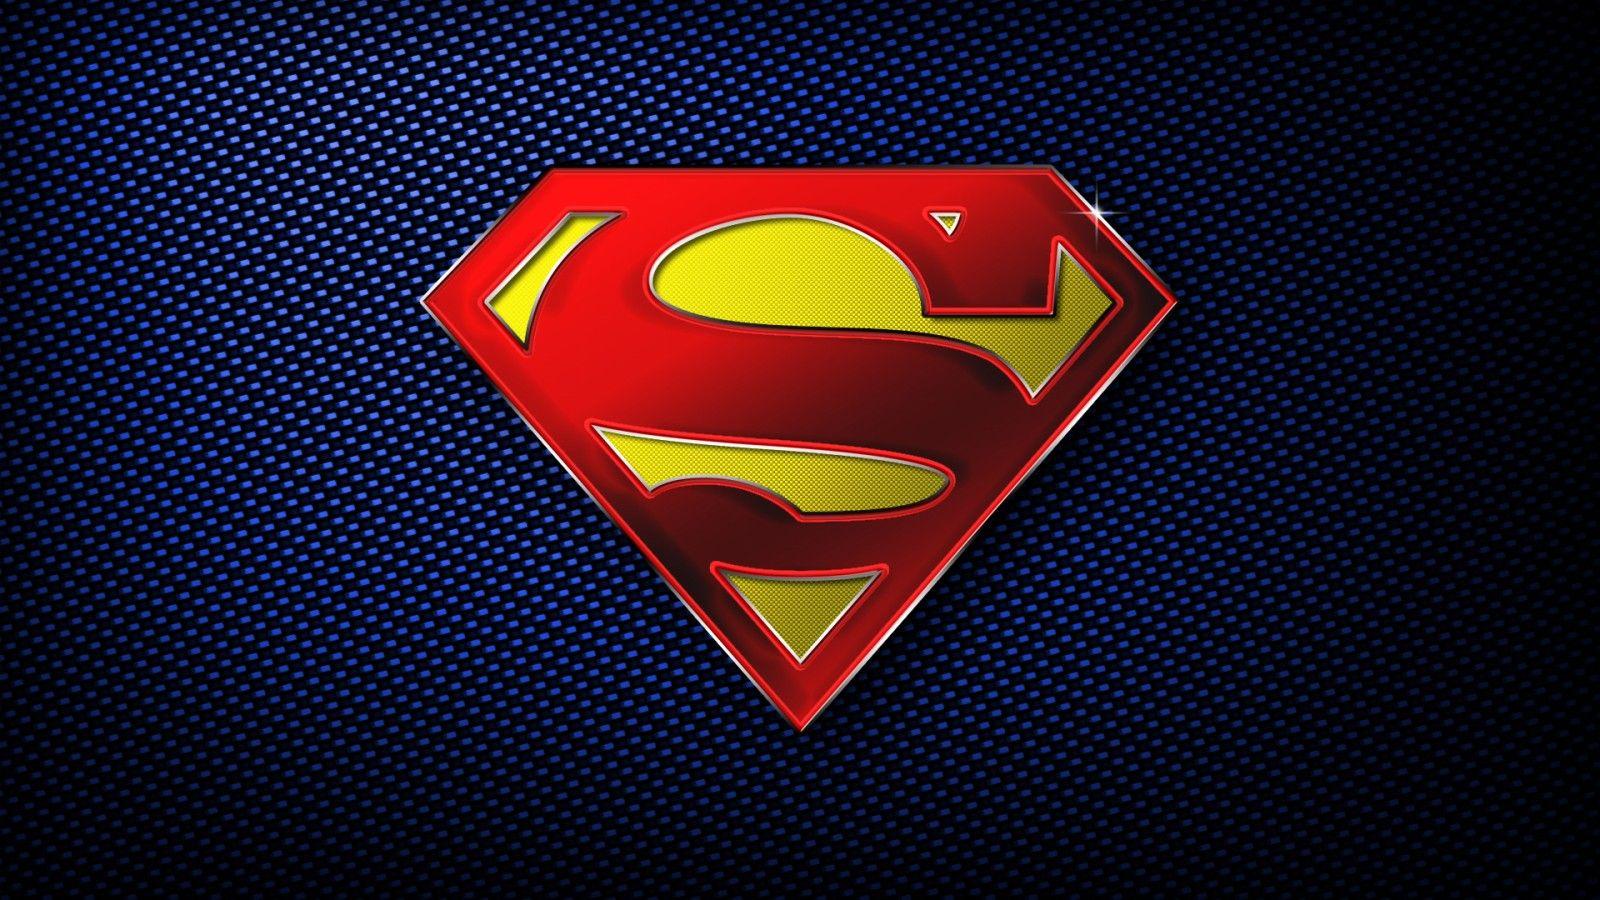 Superman Logo Wallpaper 34241 1600x900 px